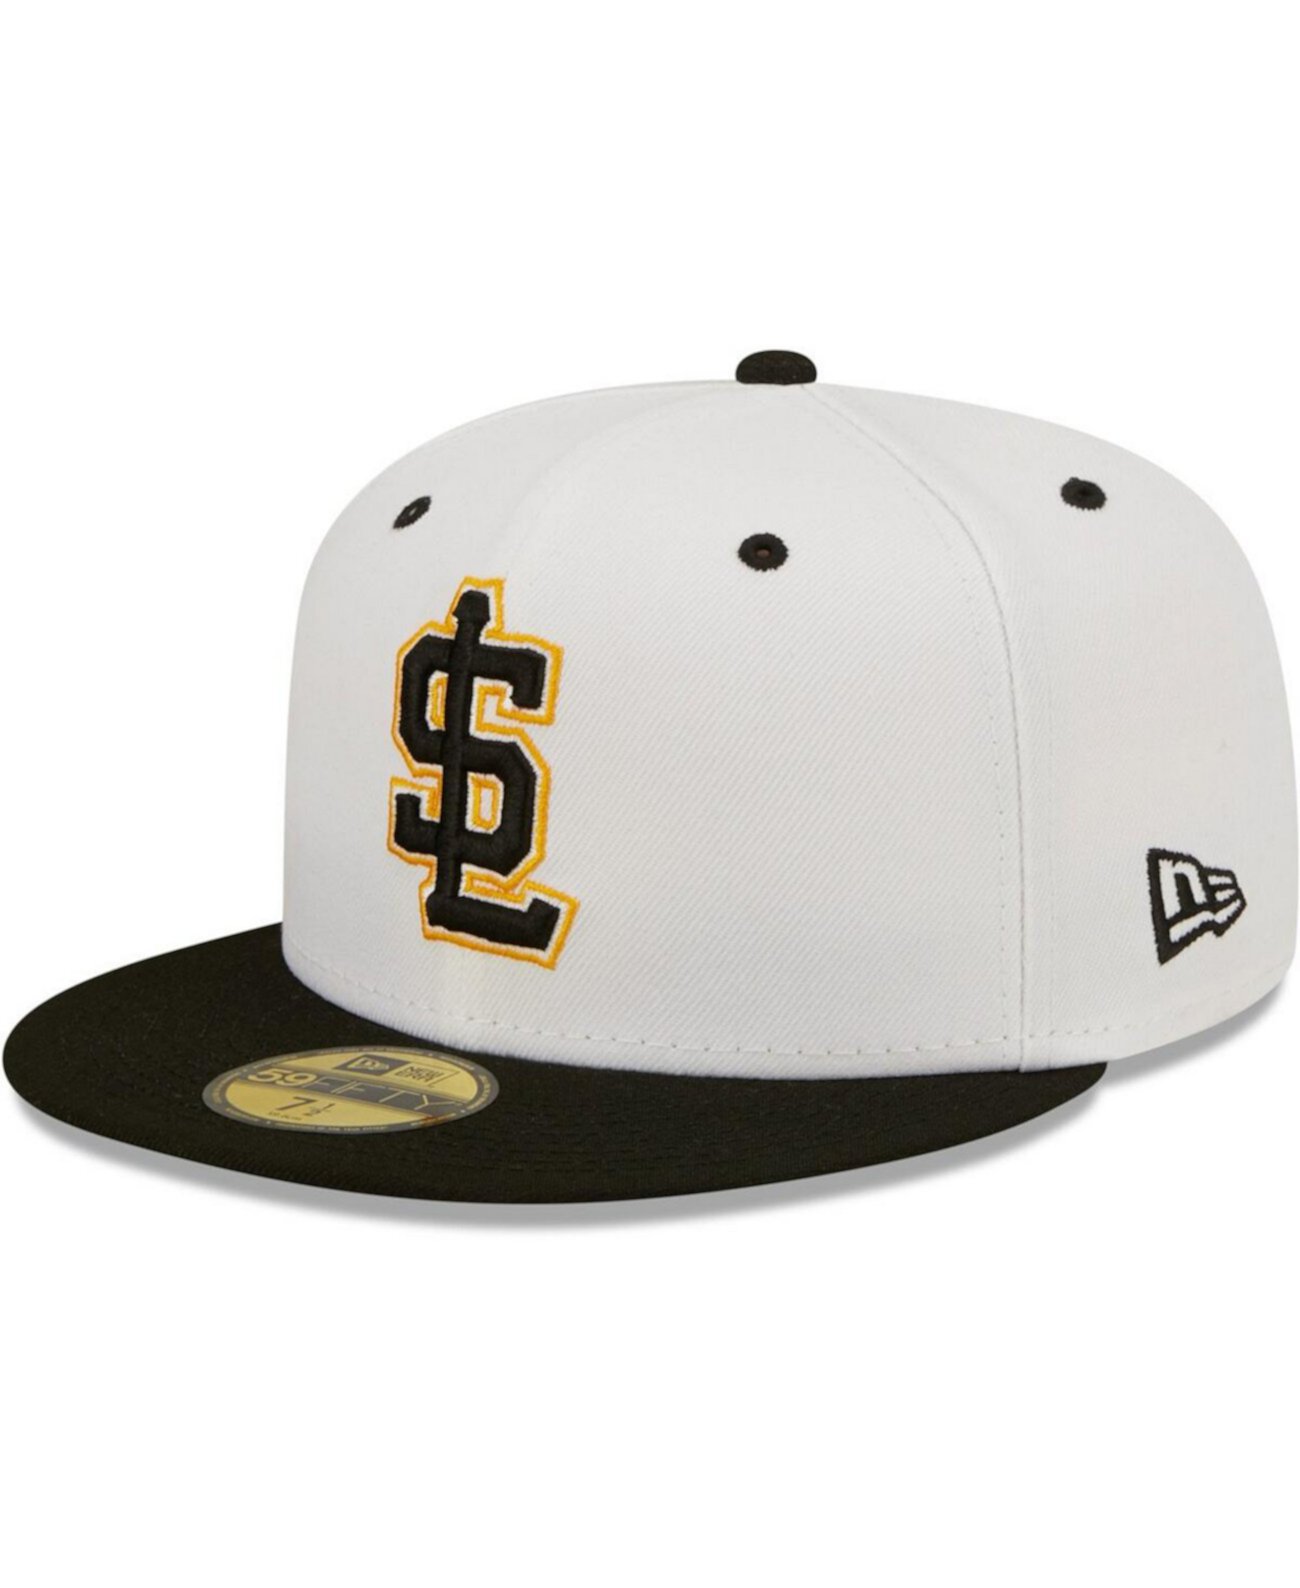 Мужская белая приталенная шляпа Salt Lake Bees Alternate Logo Authentic Collection 59FIFTY New Era